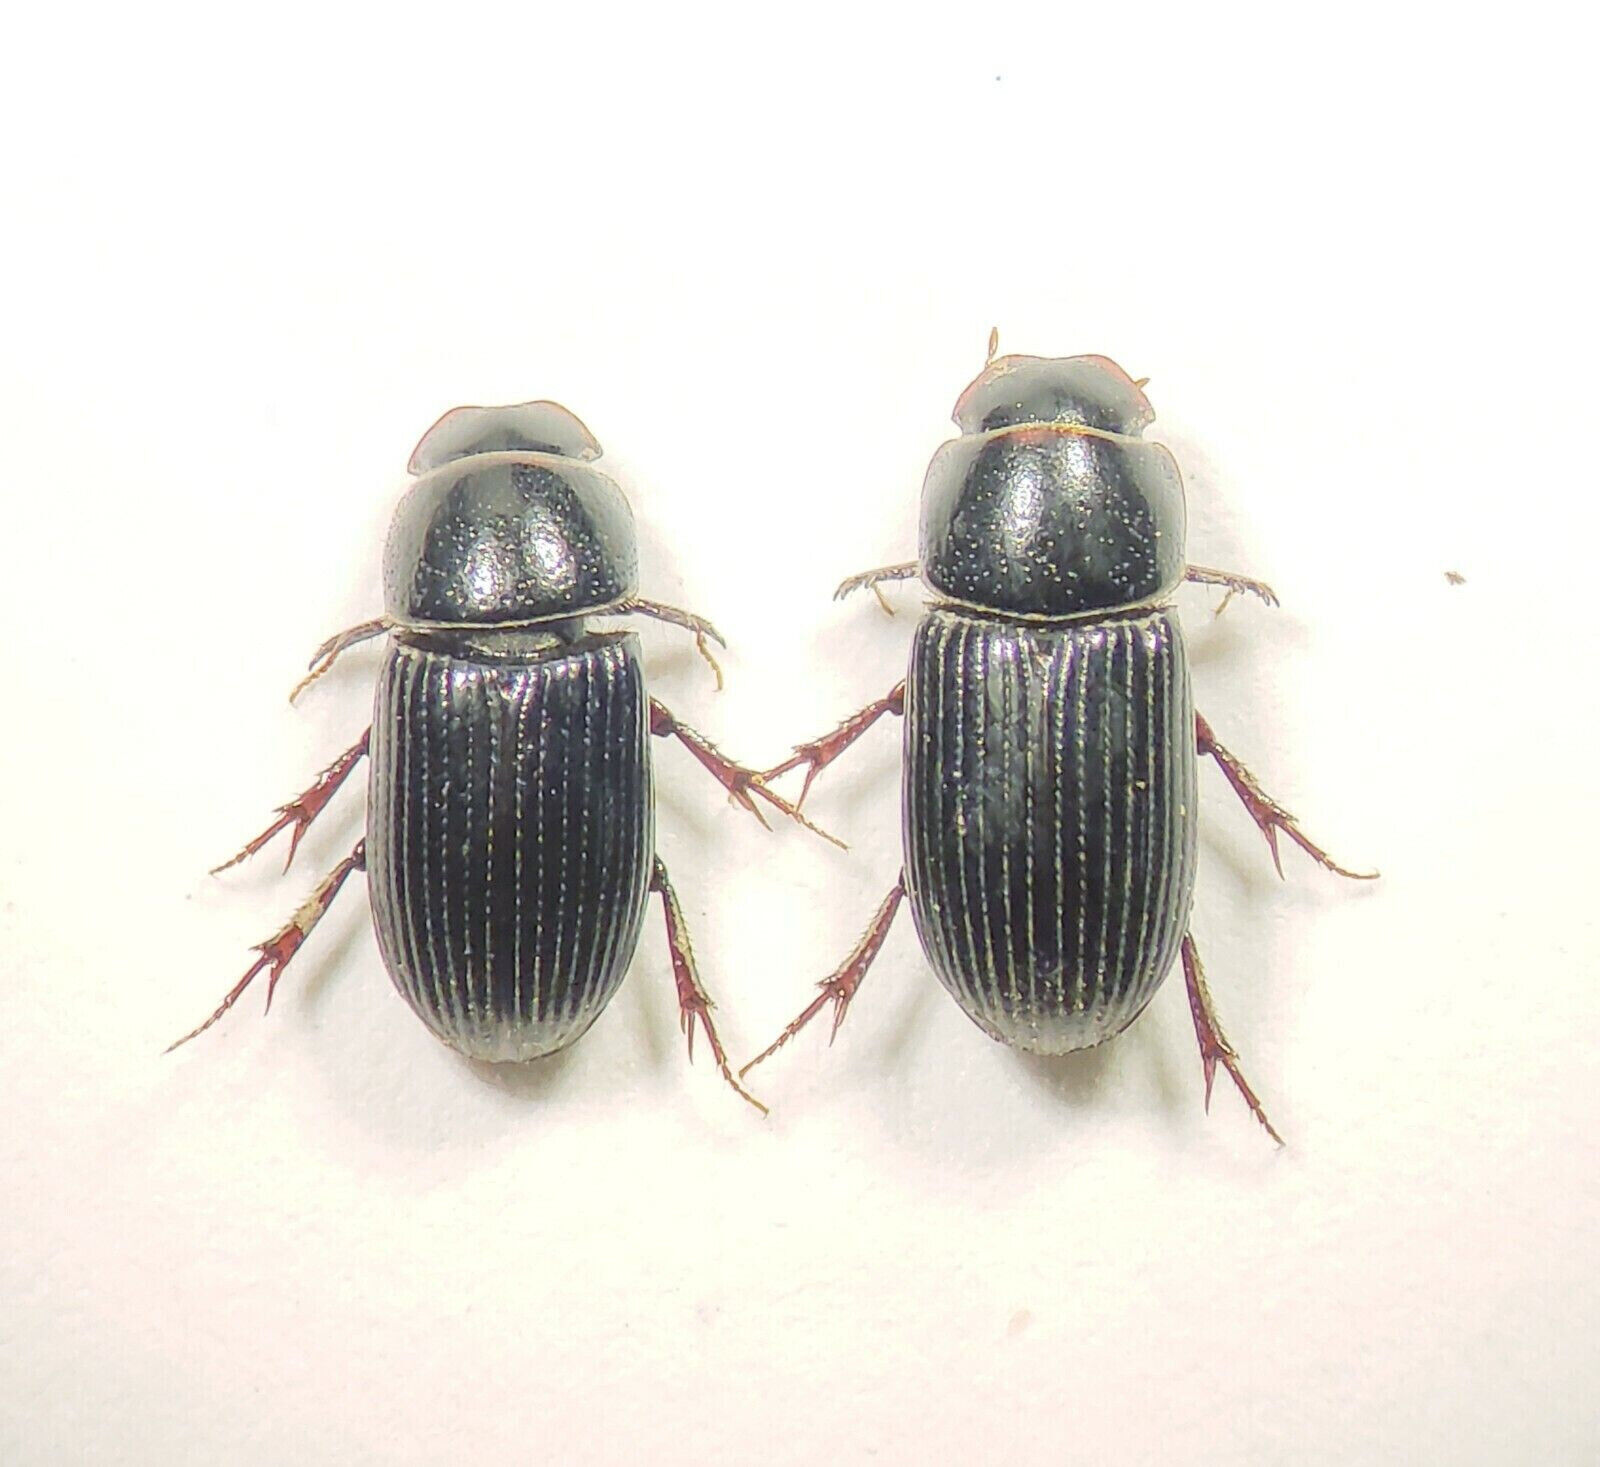  Dung Beetle: Ataenius spretulus (Scarabaeidae) USA x2